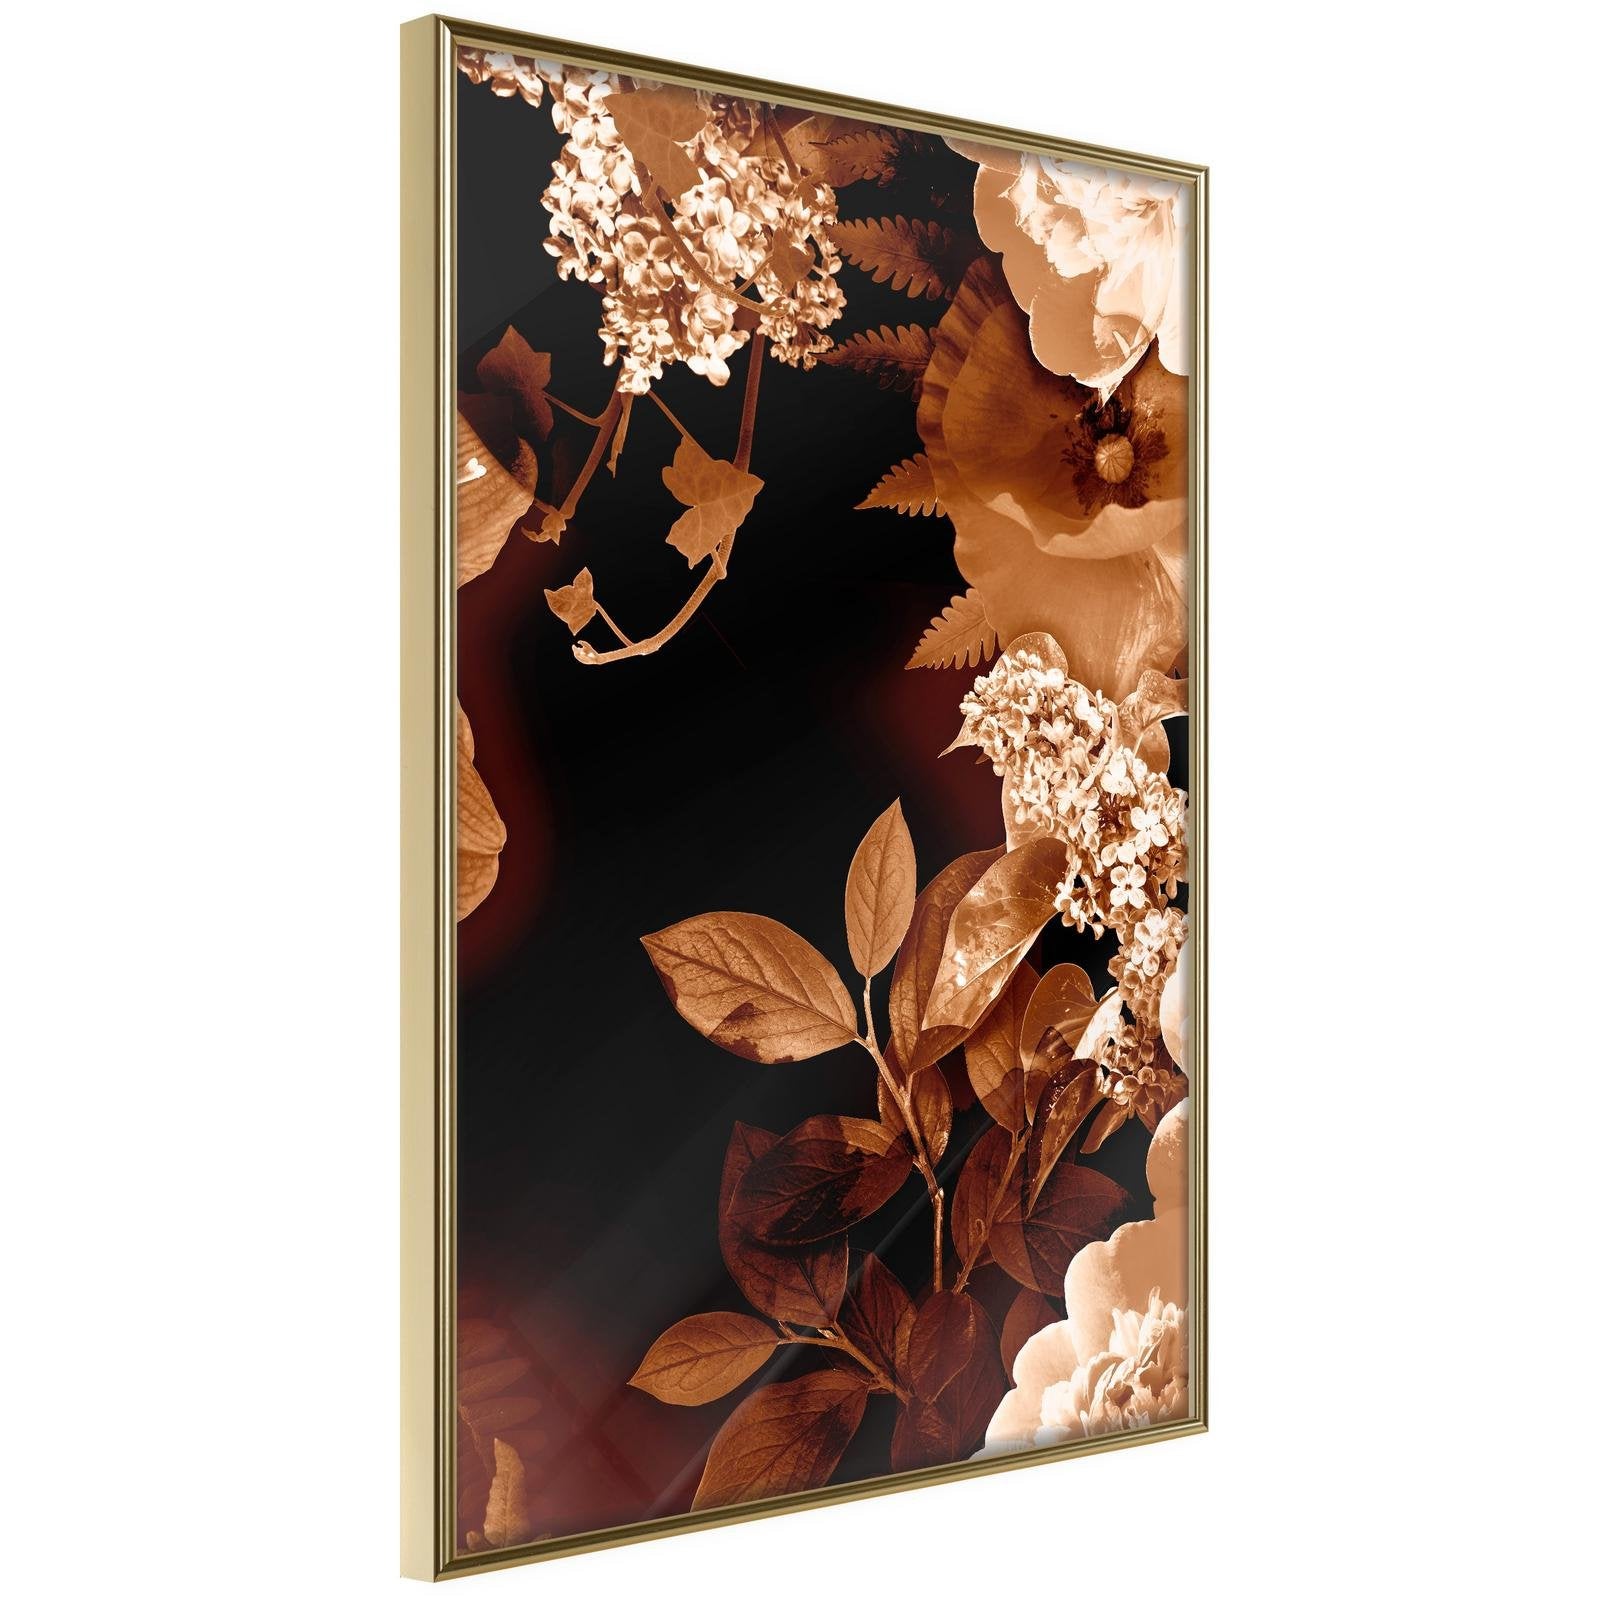 Décoration florale en sépia - Poster